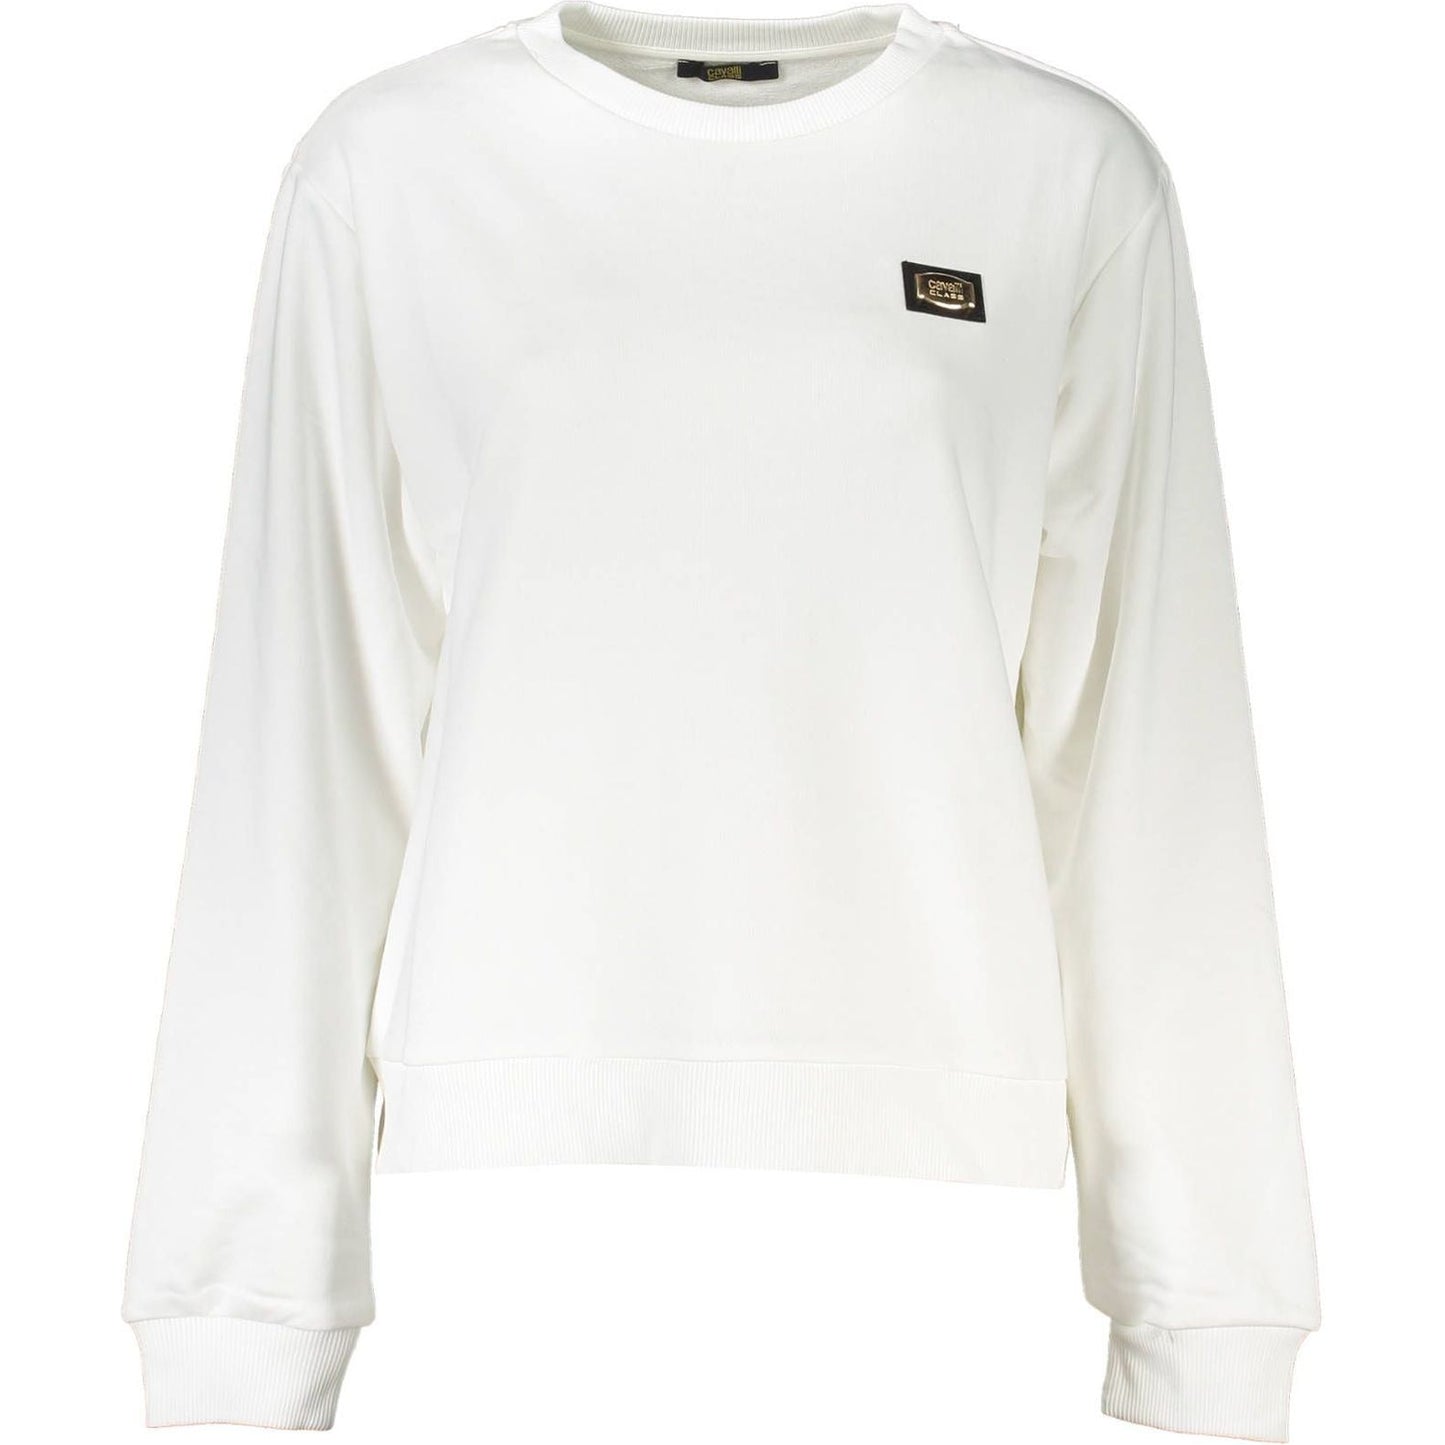 Cavalli Class White Cotton Sweater white-cotton-sweater-8 cavalliclassfelpasenzazipdonnabianco_1-2-e4f12516-50e.jpg